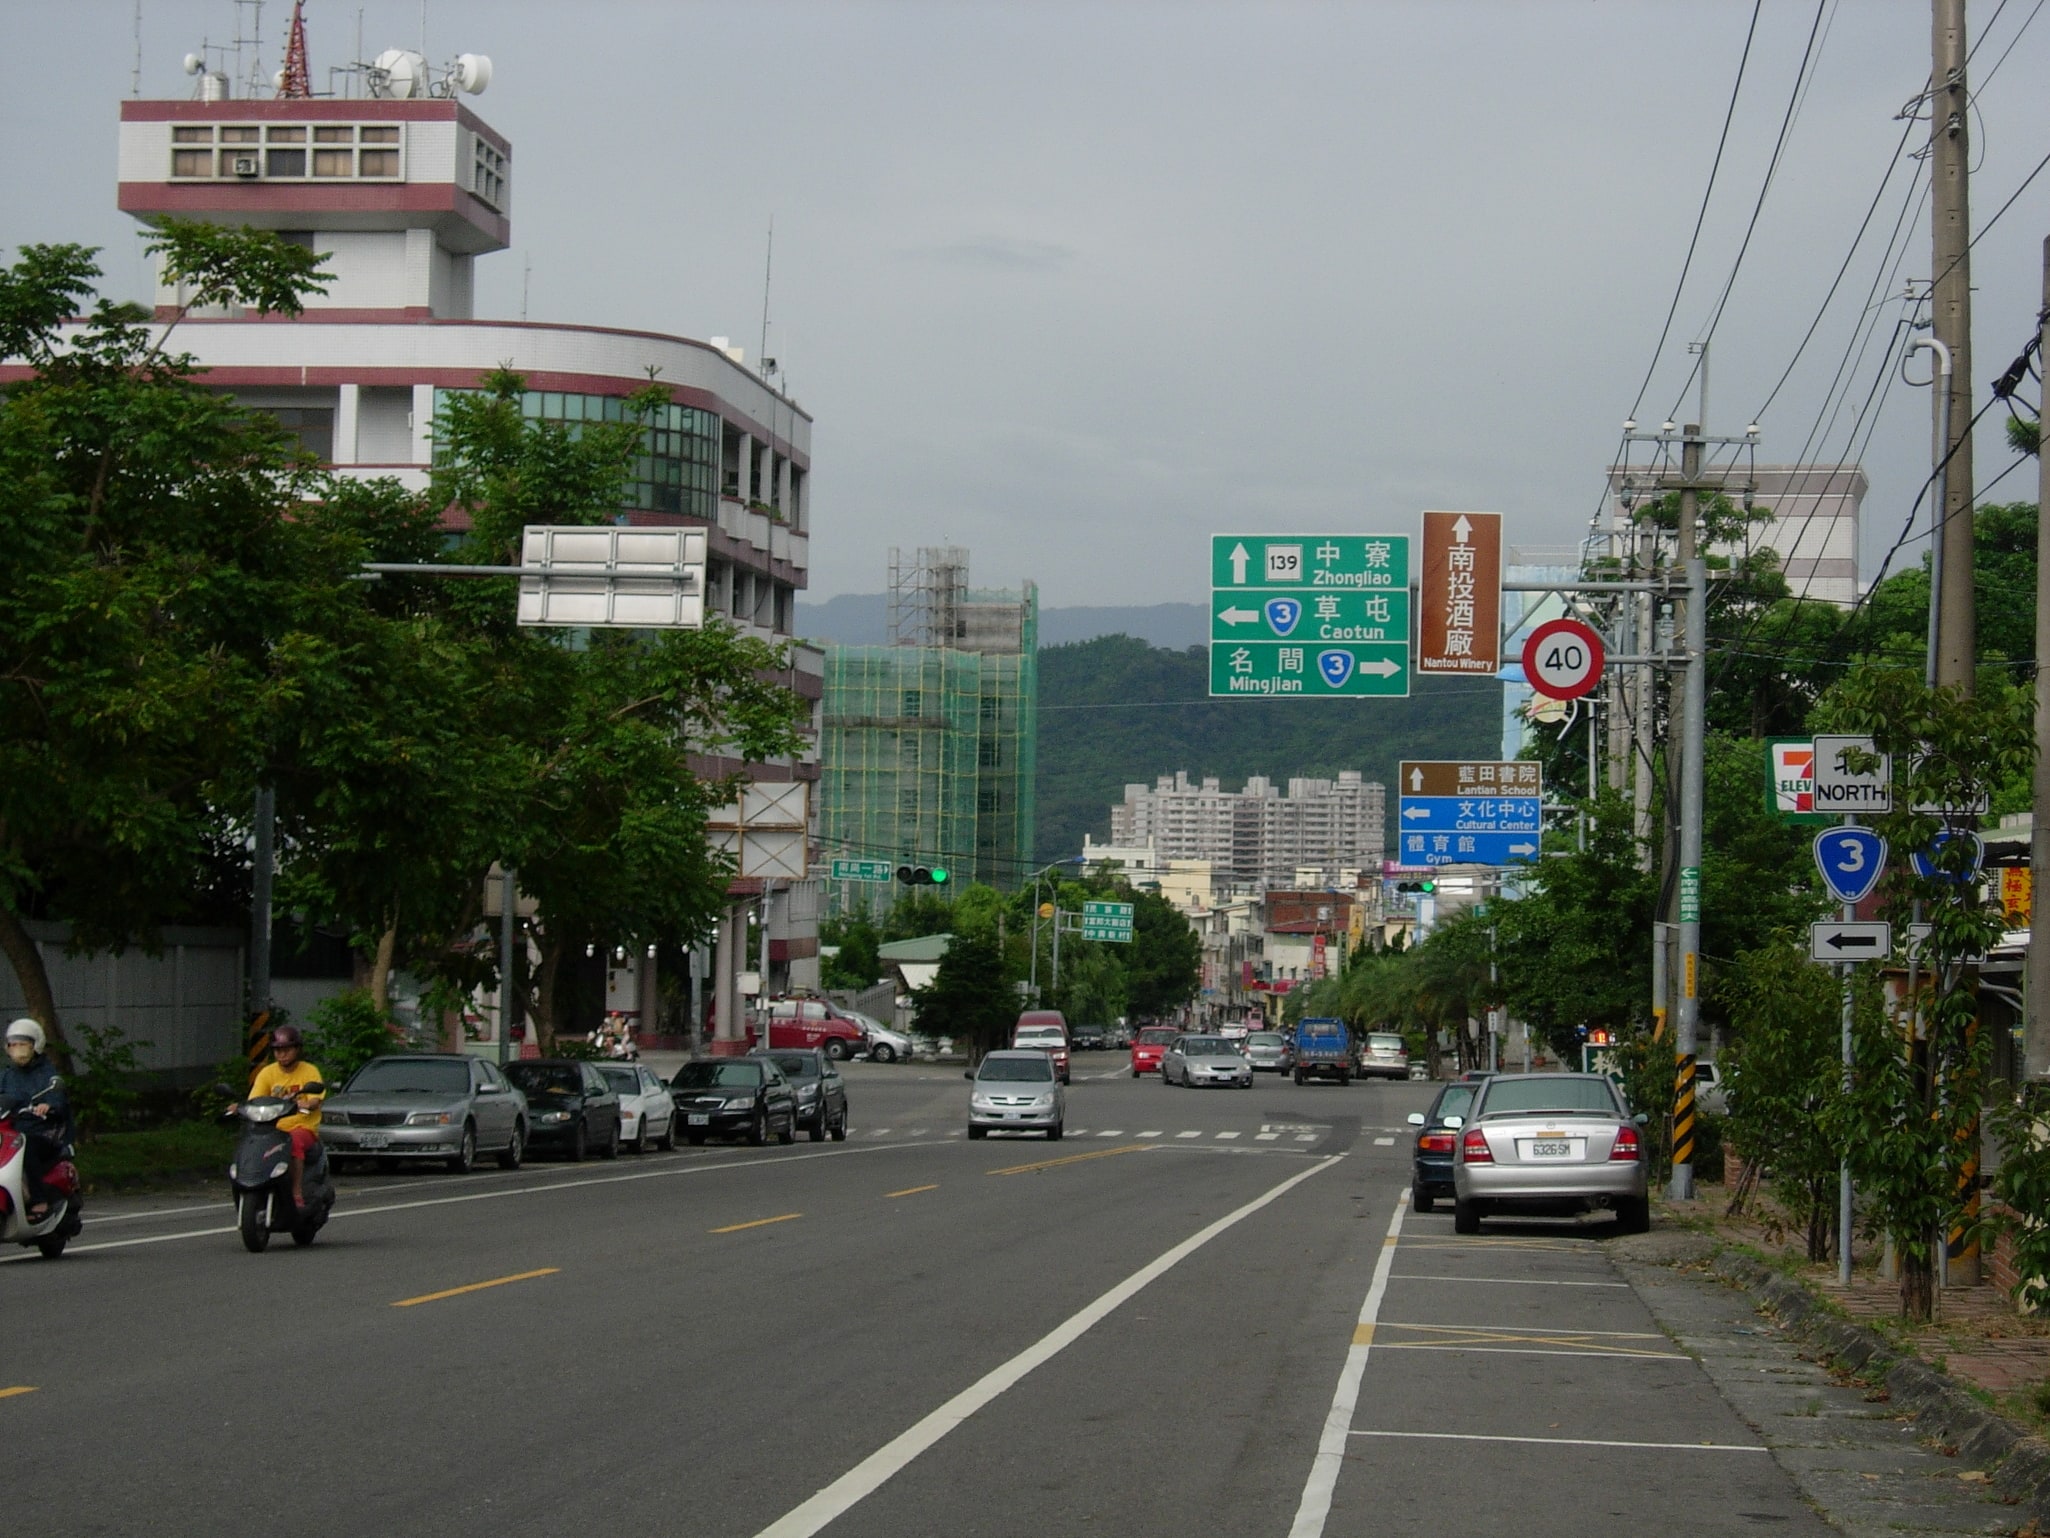 Nantou, Taiwan